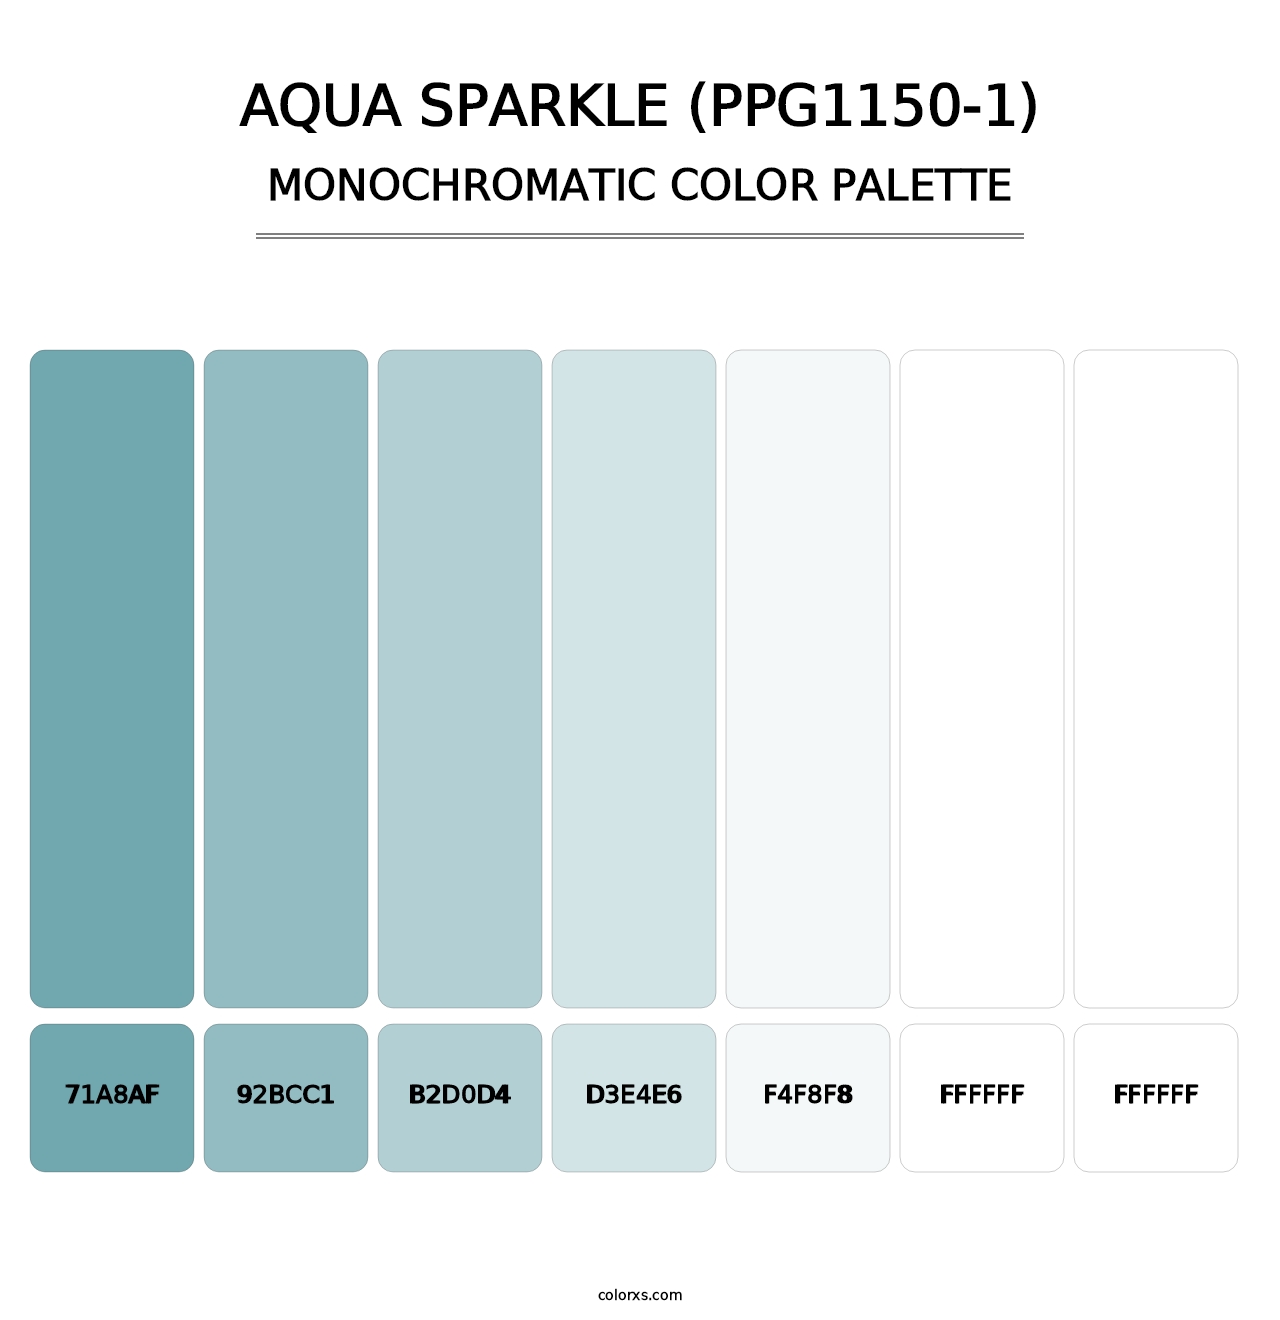 Aqua Sparkle (PPG1150-1) - Monochromatic Color Palette